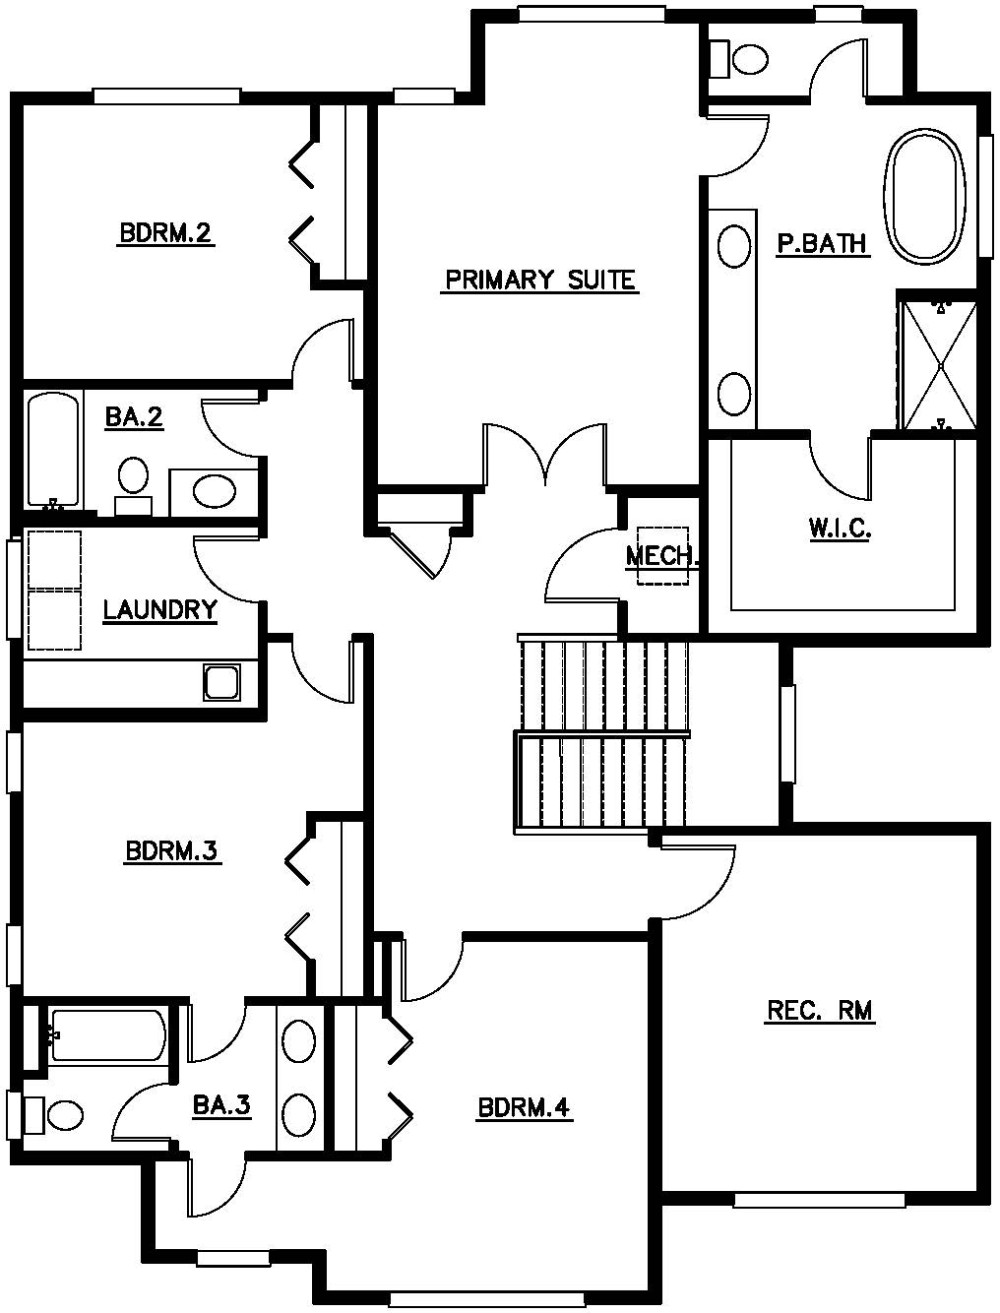 Upper Floor Plan floorplan for the Chelan - Lot 11 home